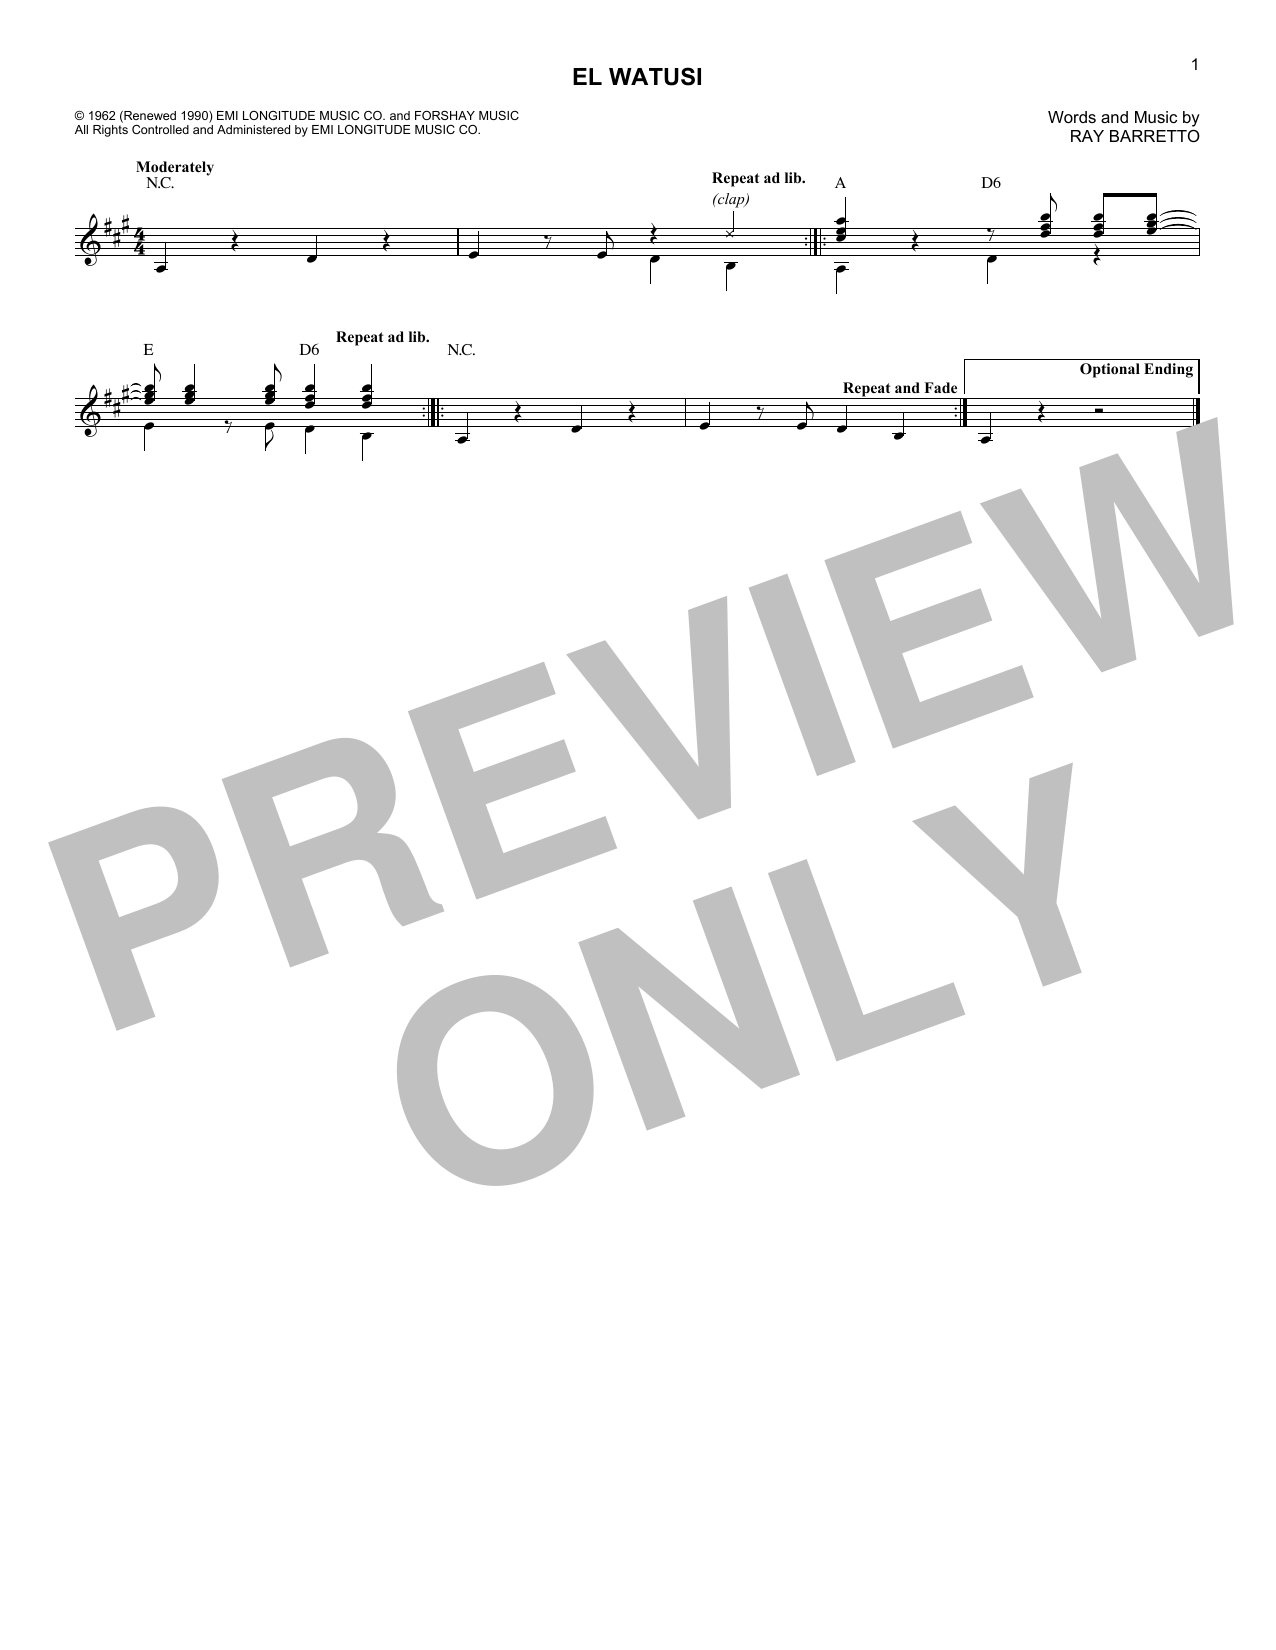 Ray Barretto El Watusi Sheet Music Notes & Chords for Melody Line, Lyrics & Chords - Download or Print PDF